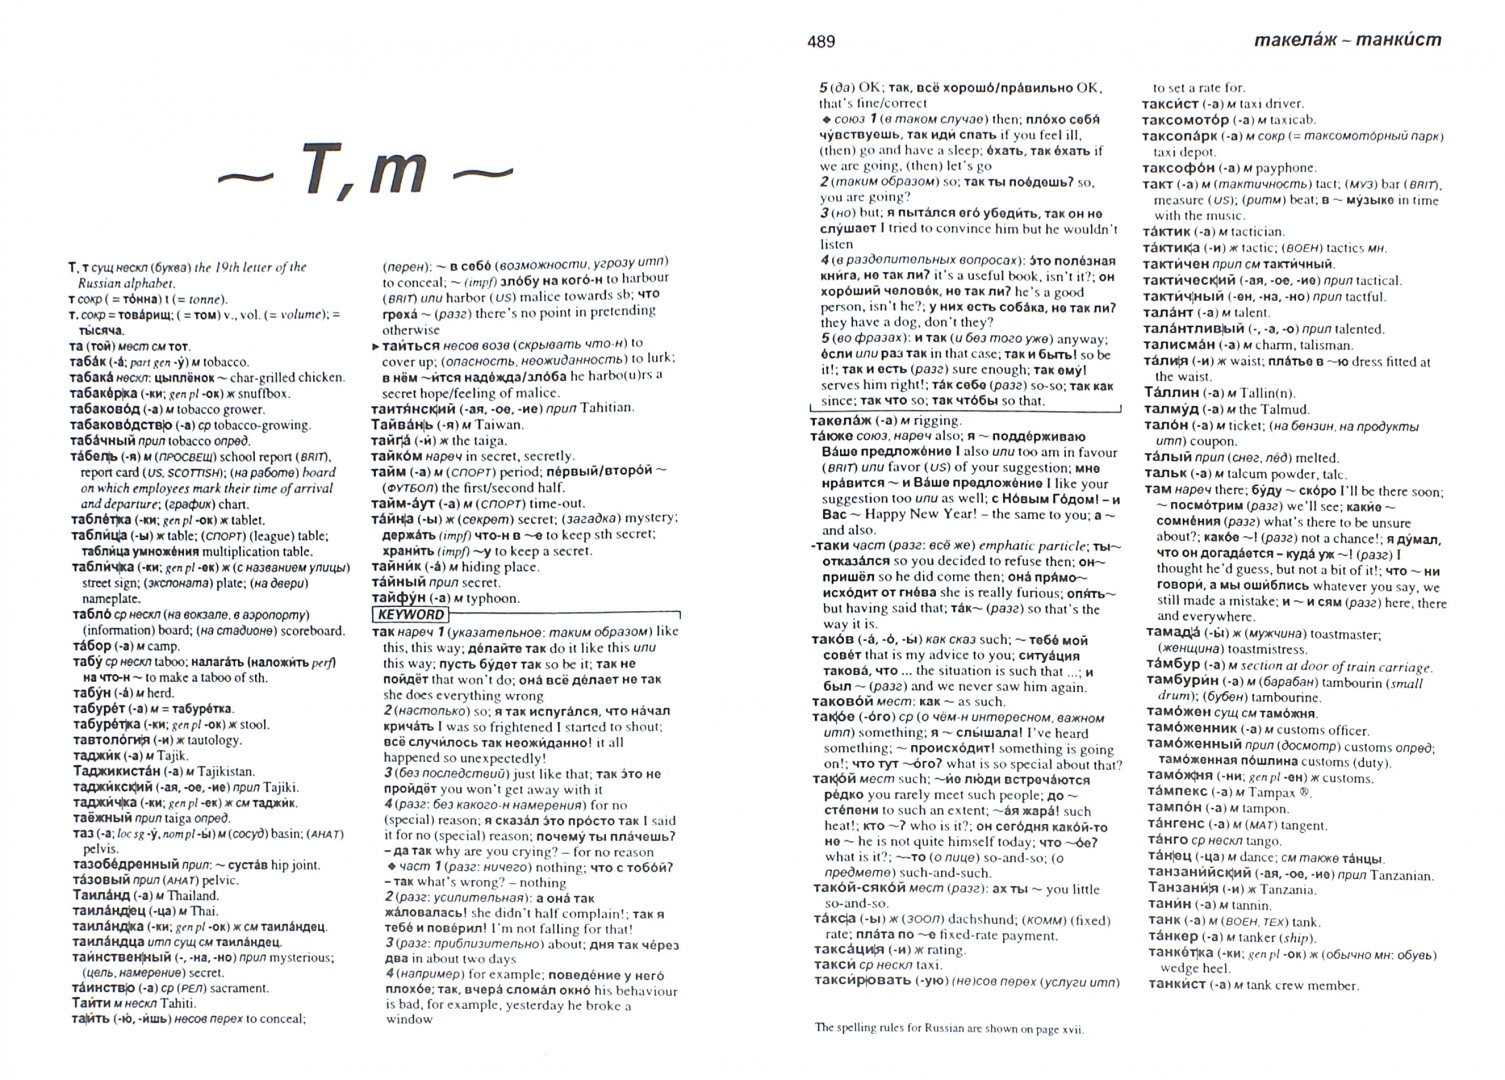 Иллюстрация 2 из 2 для Англо-русский русско-английский словарь | Лабиринт - книги. Источник: Лабиринт